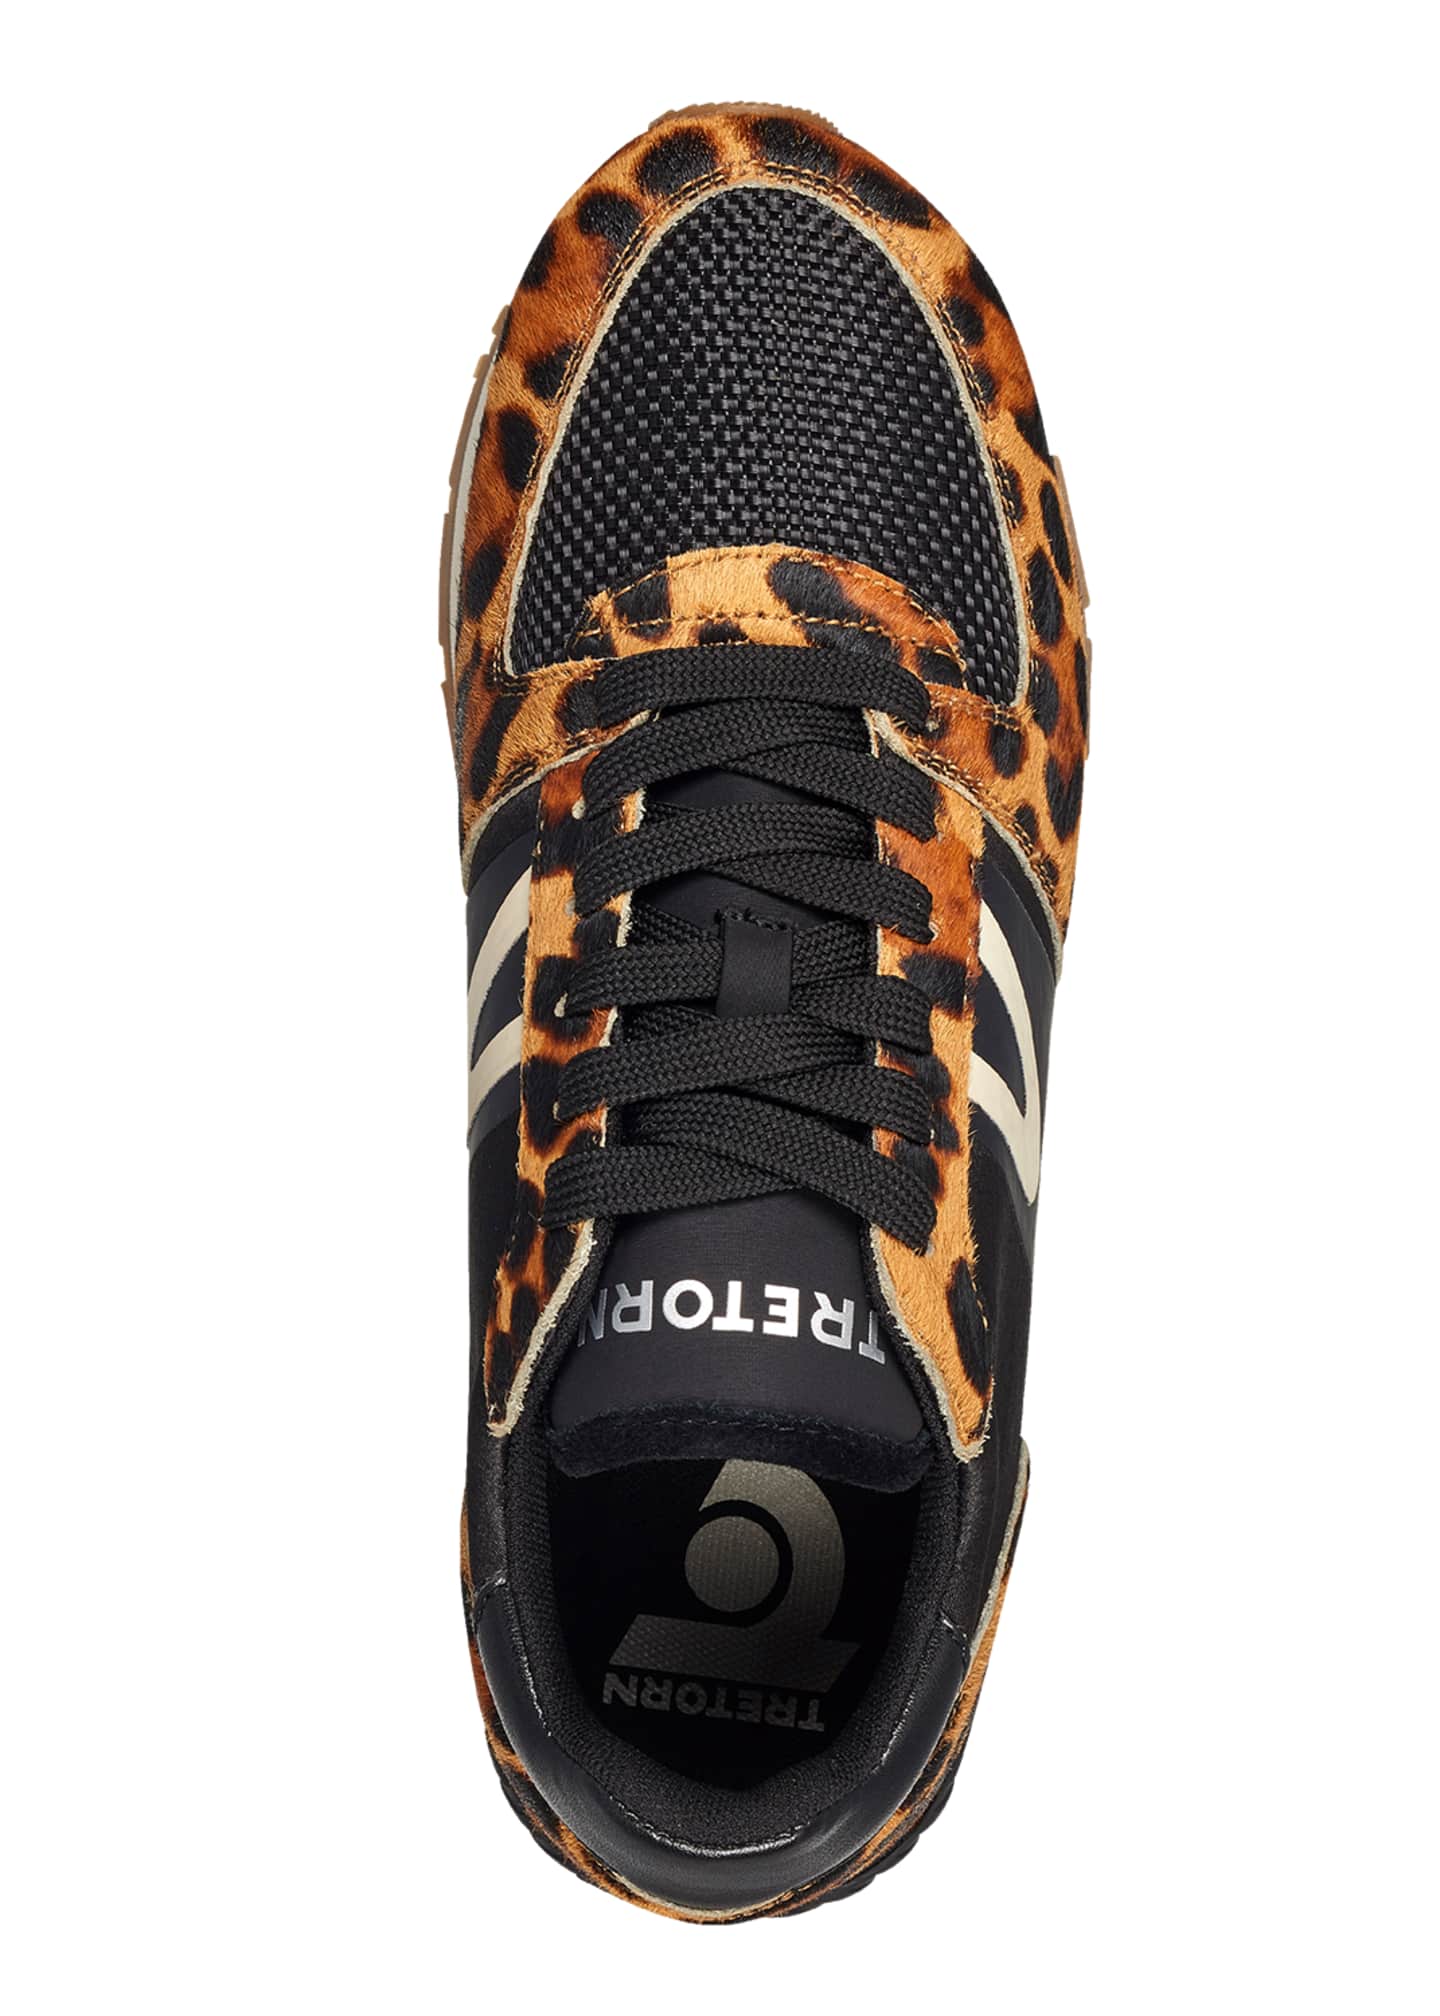 tretorn leopard print sneakers